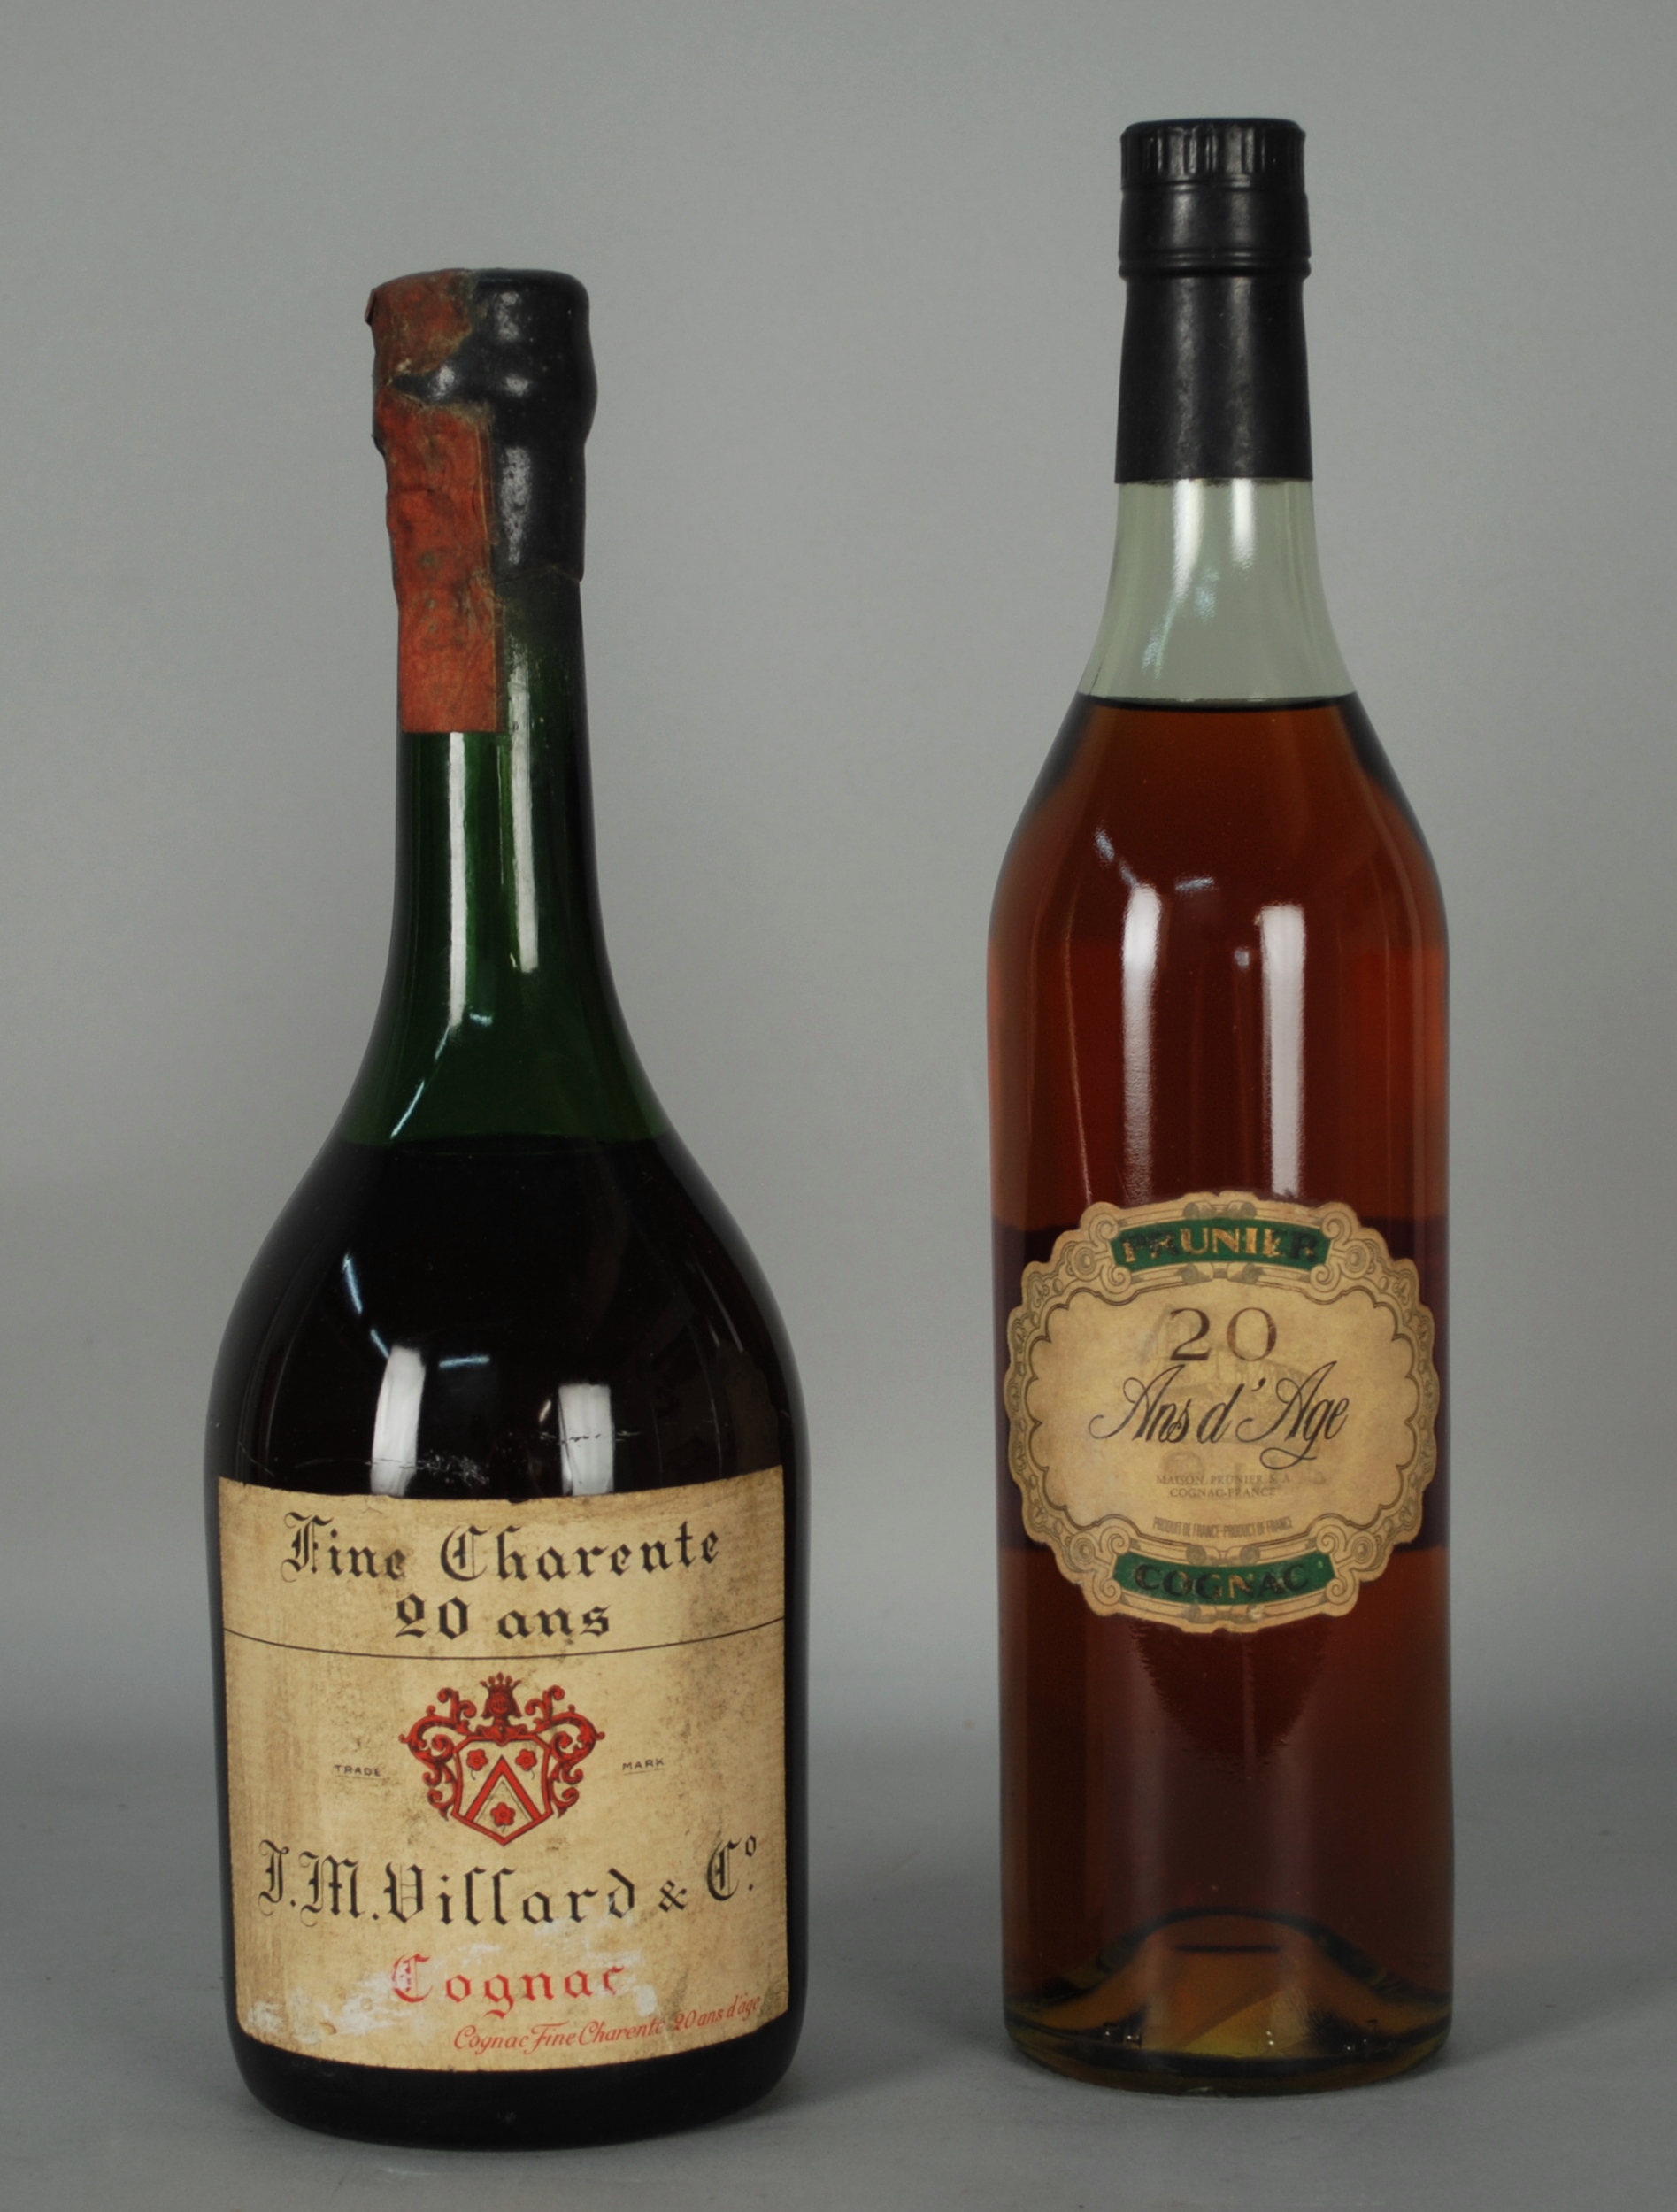 Due Cognac invecchiati vent'anni: - Cognac VILLARD (gruppo Brugerolle) - 20 ans. Tappo sigillato